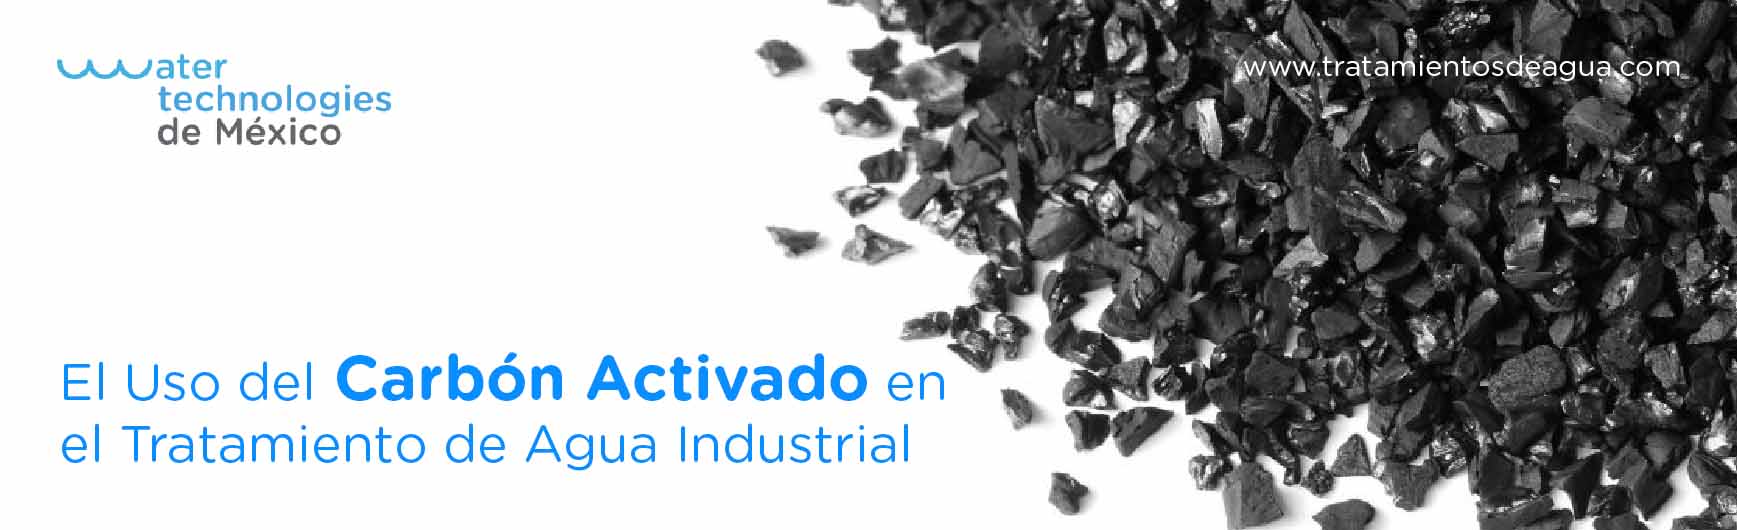 El Uso del Carbón Activado en el Tratamiento de Agua Industrial - Water  Technologies de México